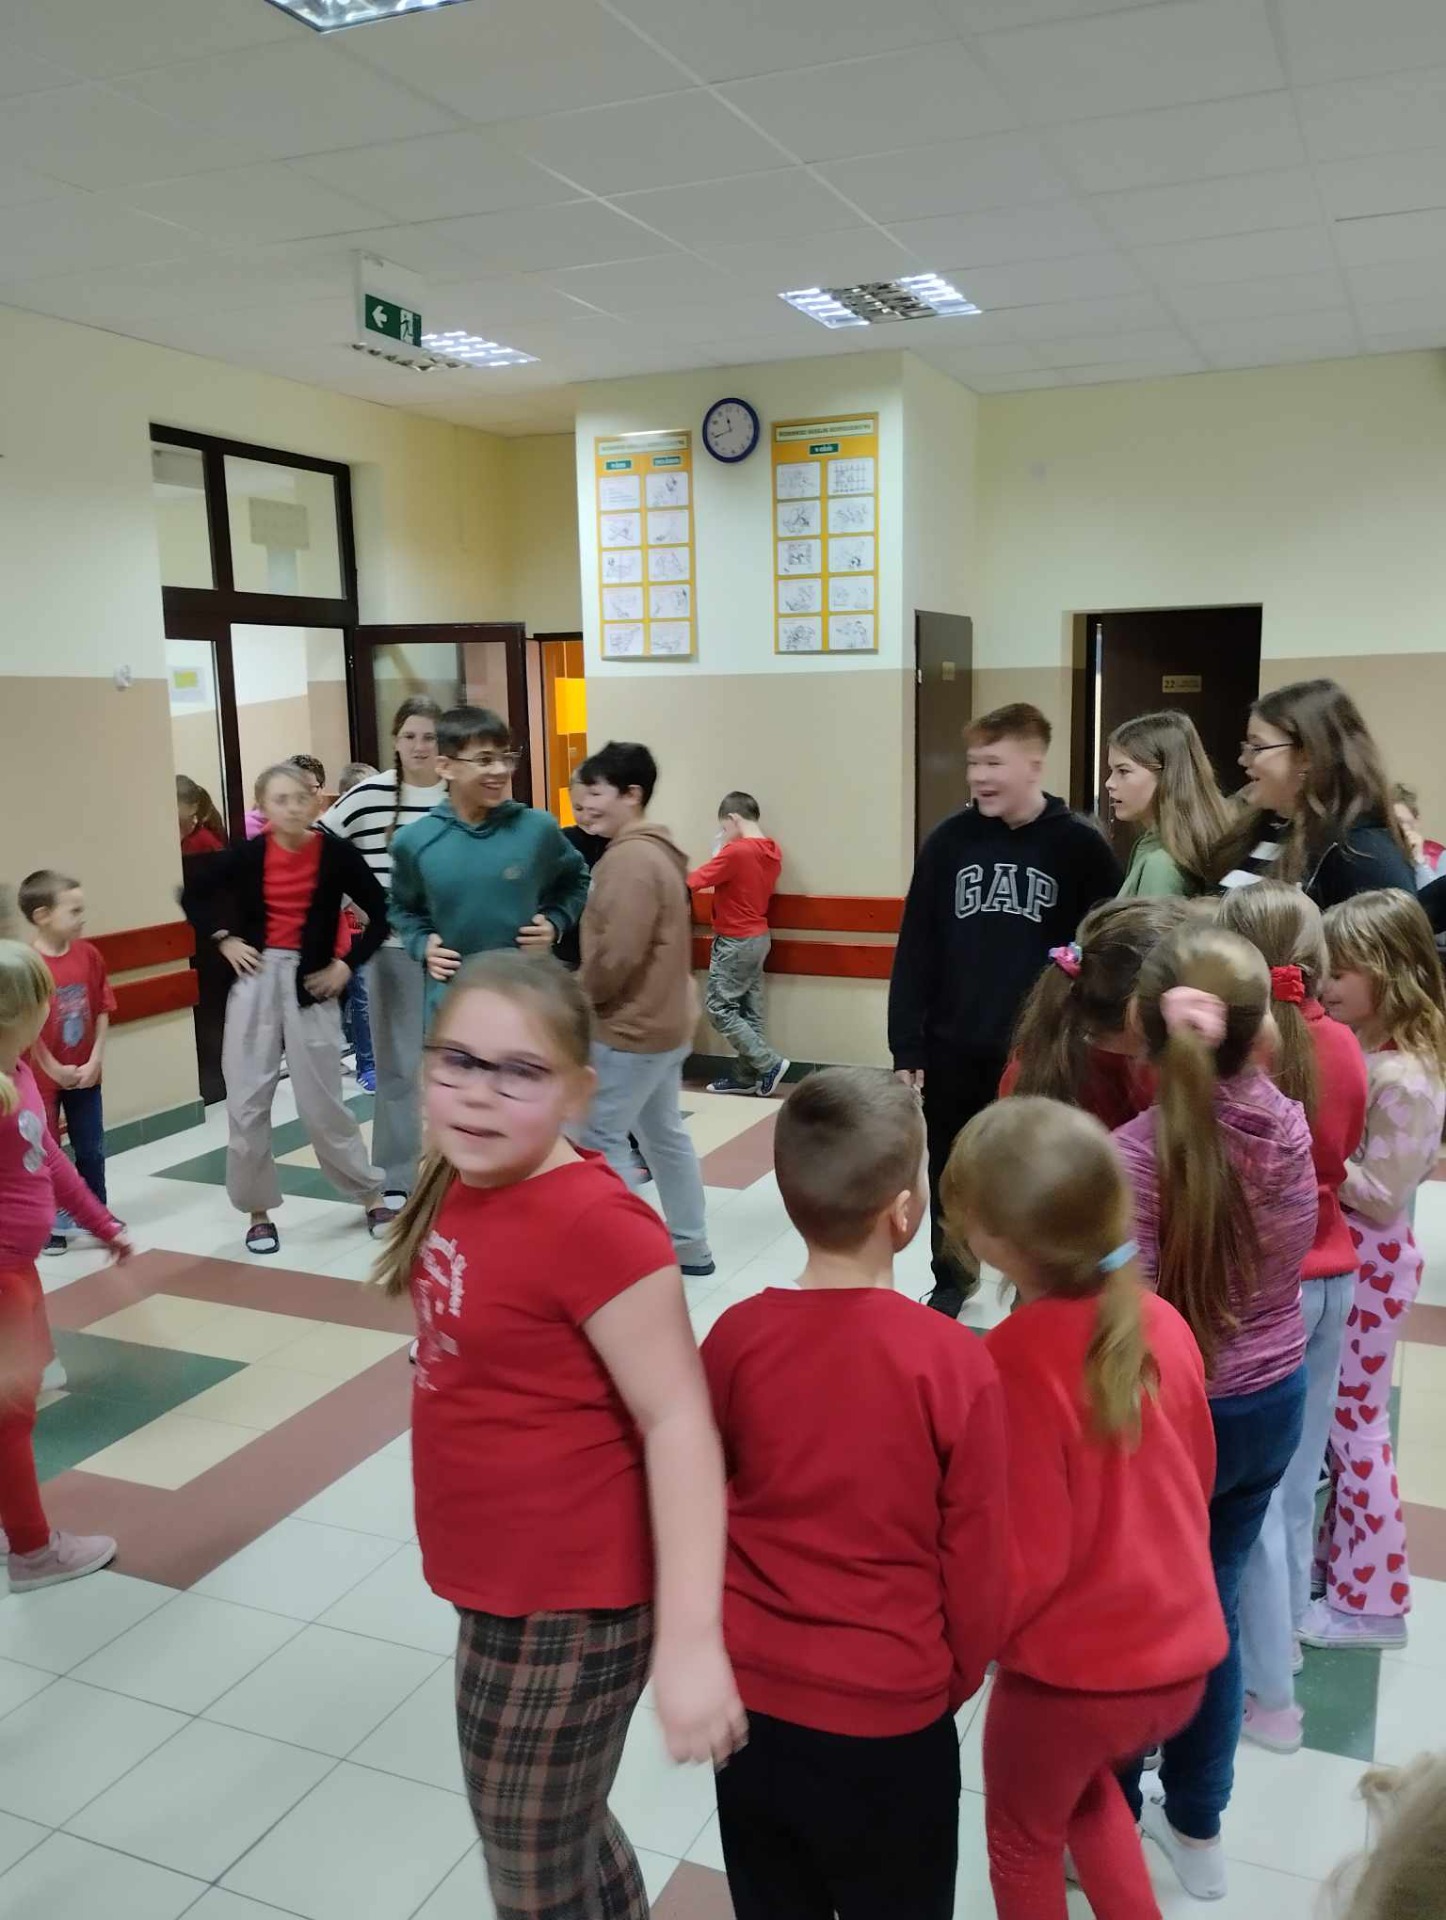 Uczniowie tańczą na szkolnym korytarzu.